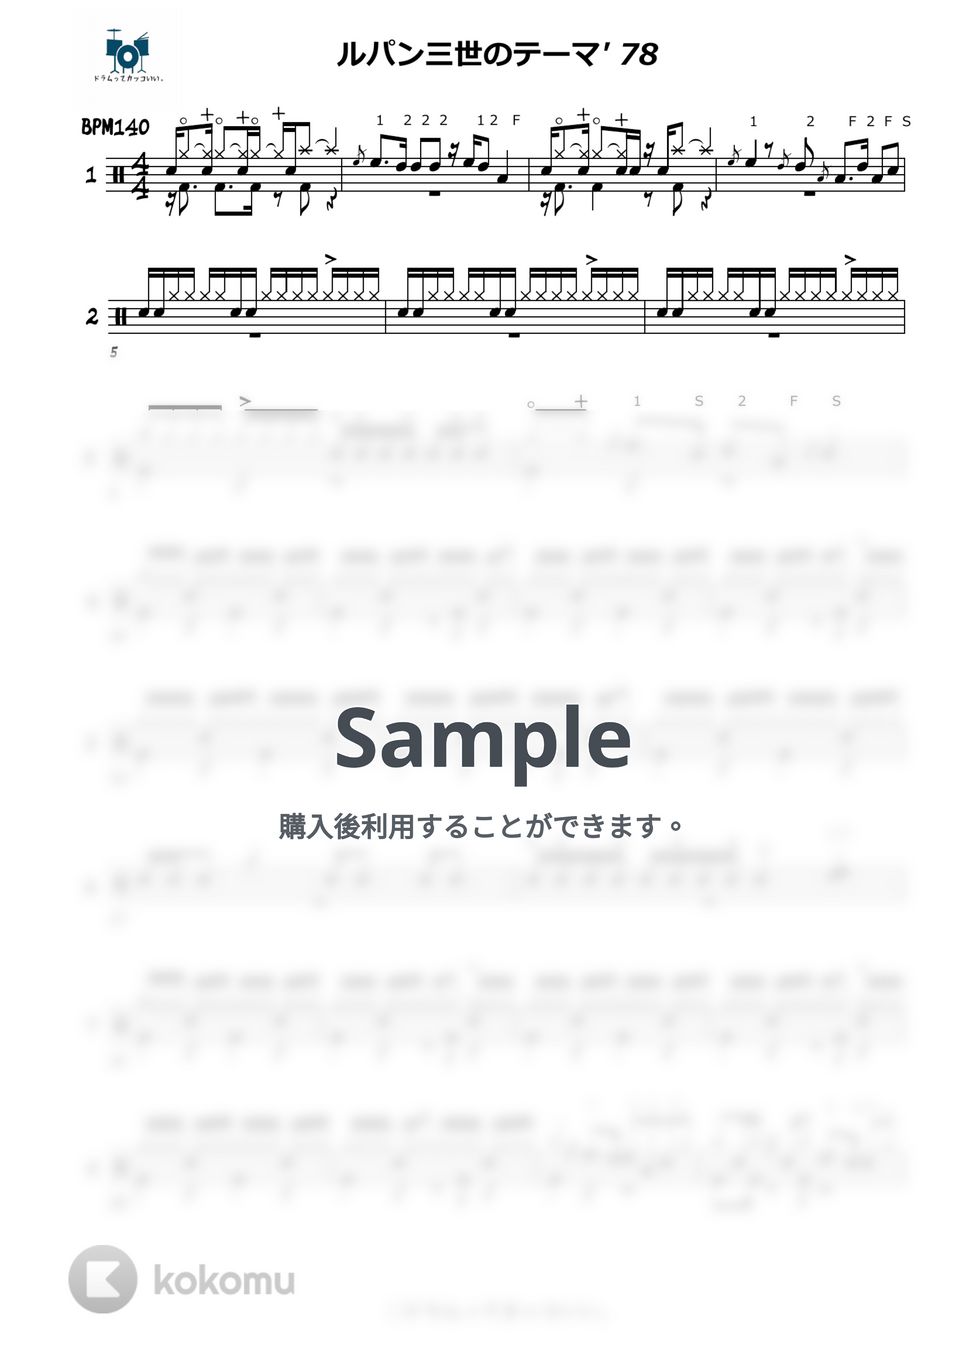 大野雄二 - ルパン三世のテーマ'78 ☆楽譜のみ☆ by ドラムってカッコいい。